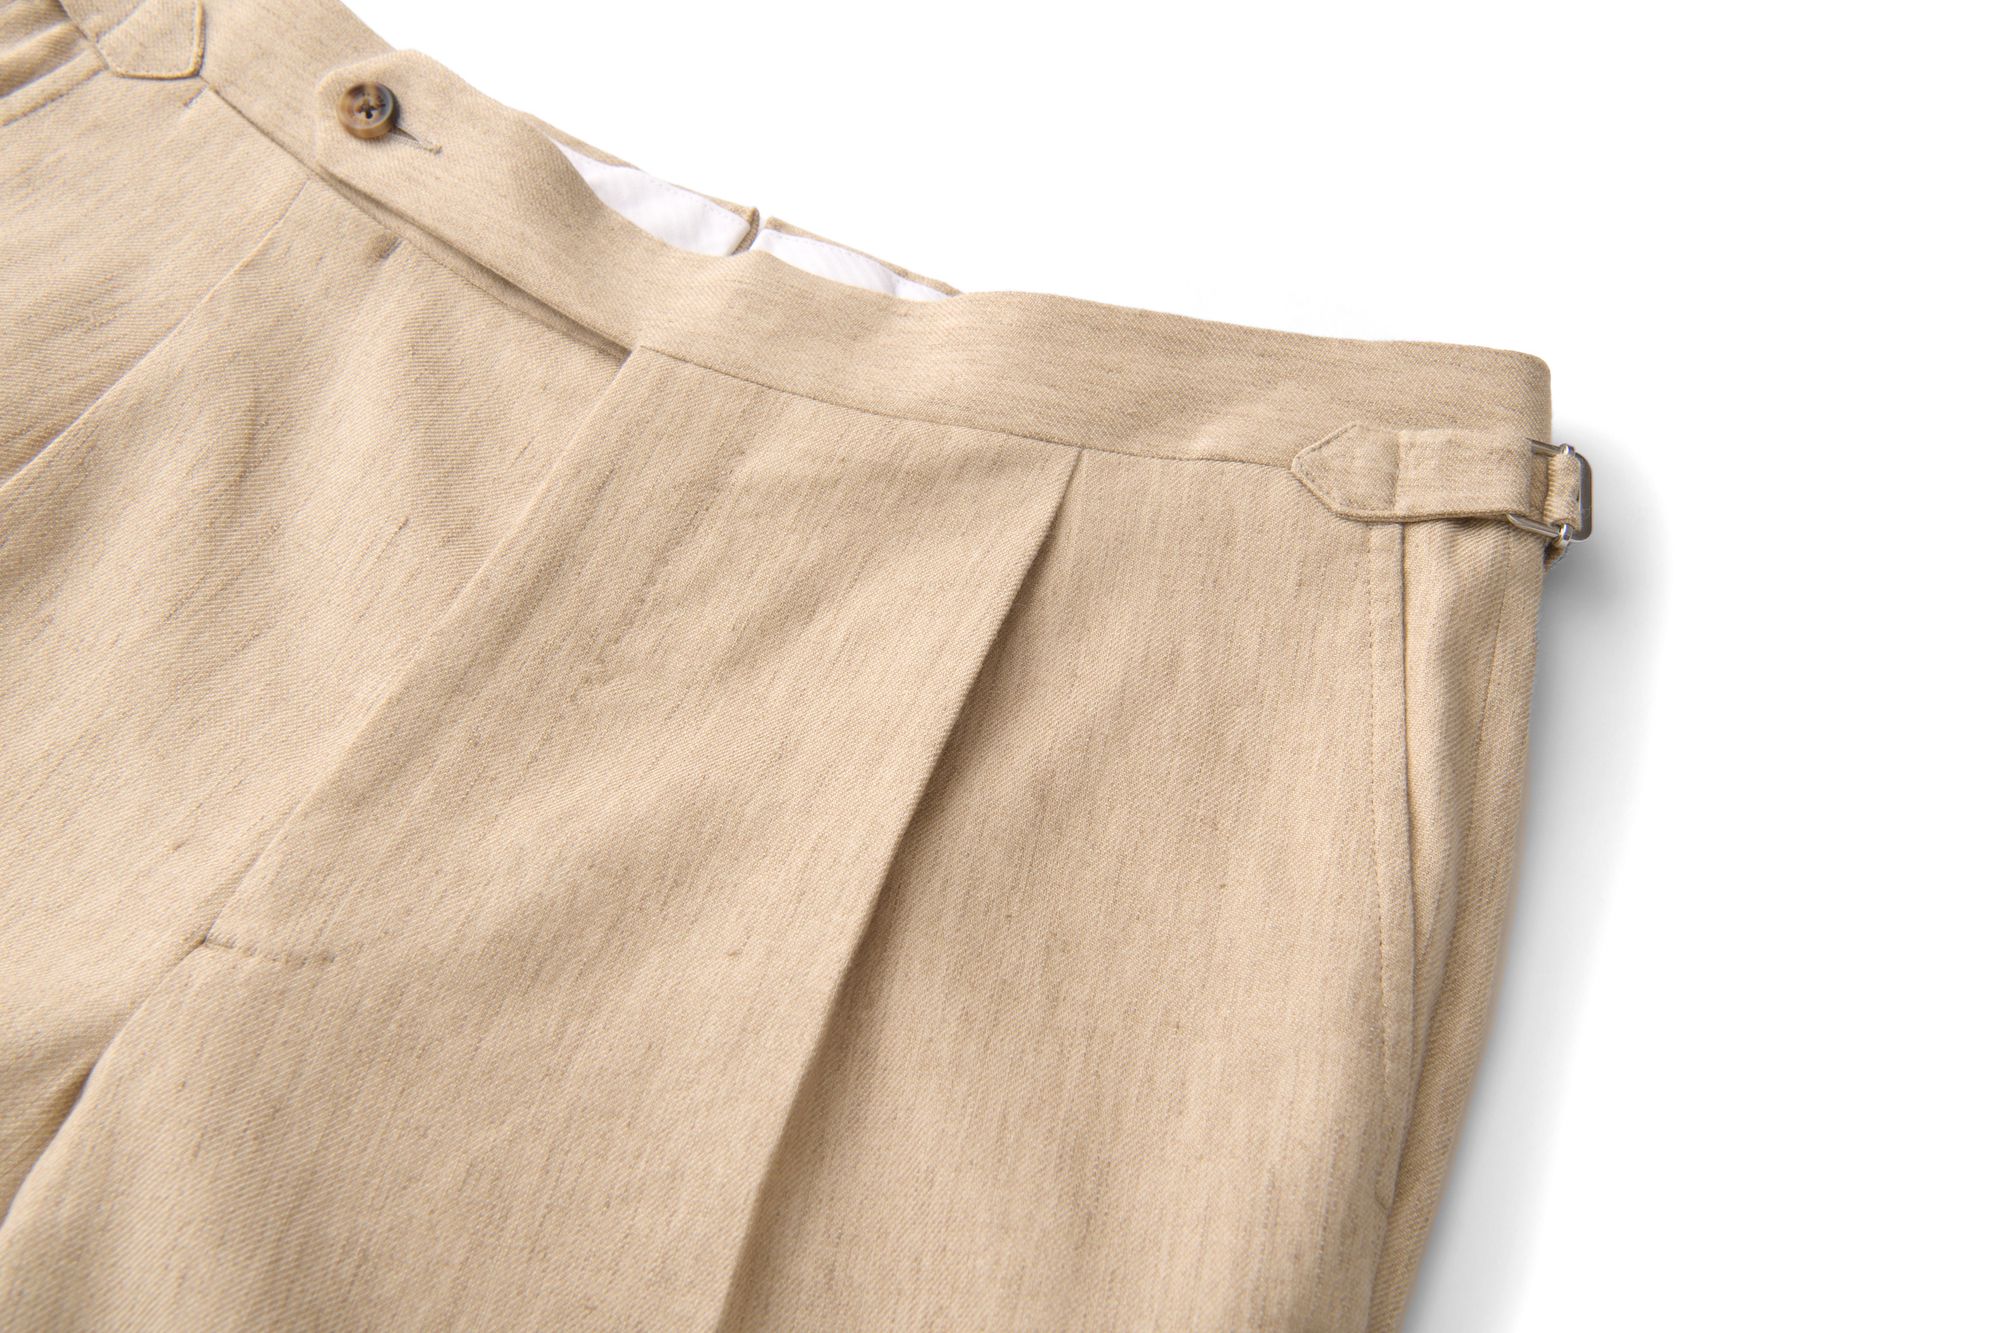 single pleat trouser detail